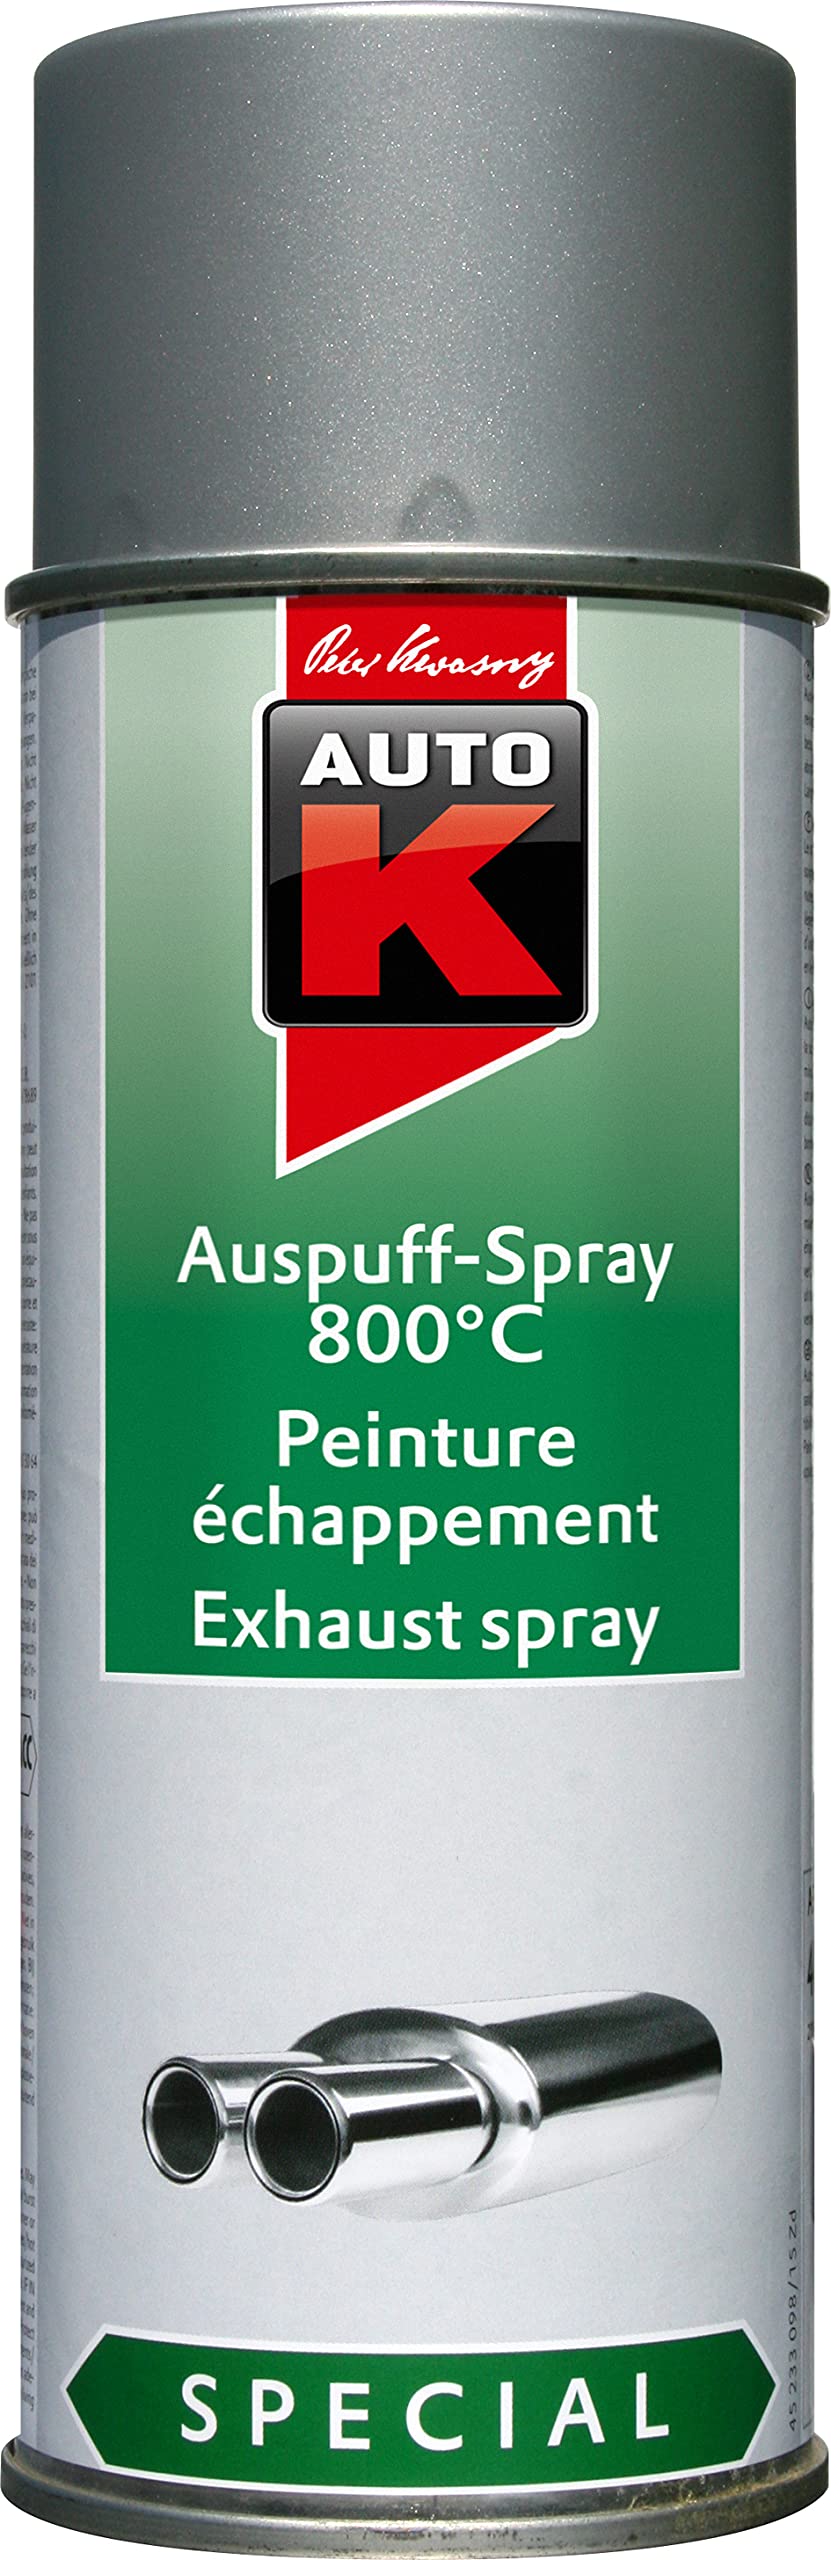 Auto-K KWASNY 233 098 Special Auspuff-Spray Silber 800°C Lackspray 400ml von AutoK